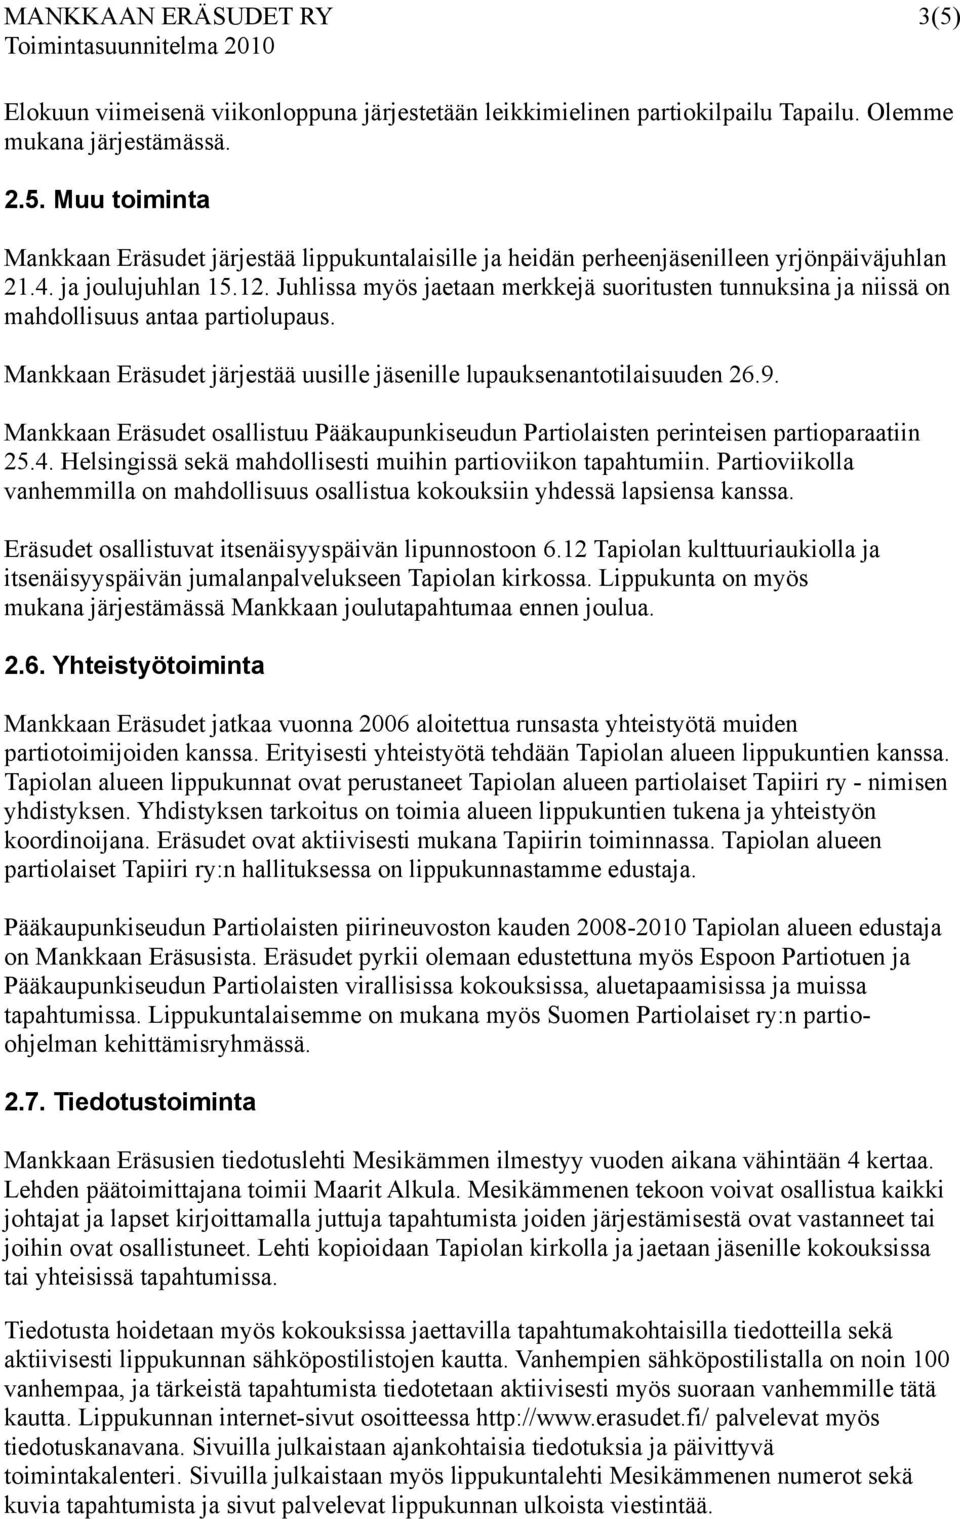 9. Mankkaan Eräsudet osallistuu Pääkaupunkiseudun Partiolaisten perinteisen partioparaatiin 25.4. Helsingissä sekä mahdollisesti muihin partioviikon tapahtumiin.